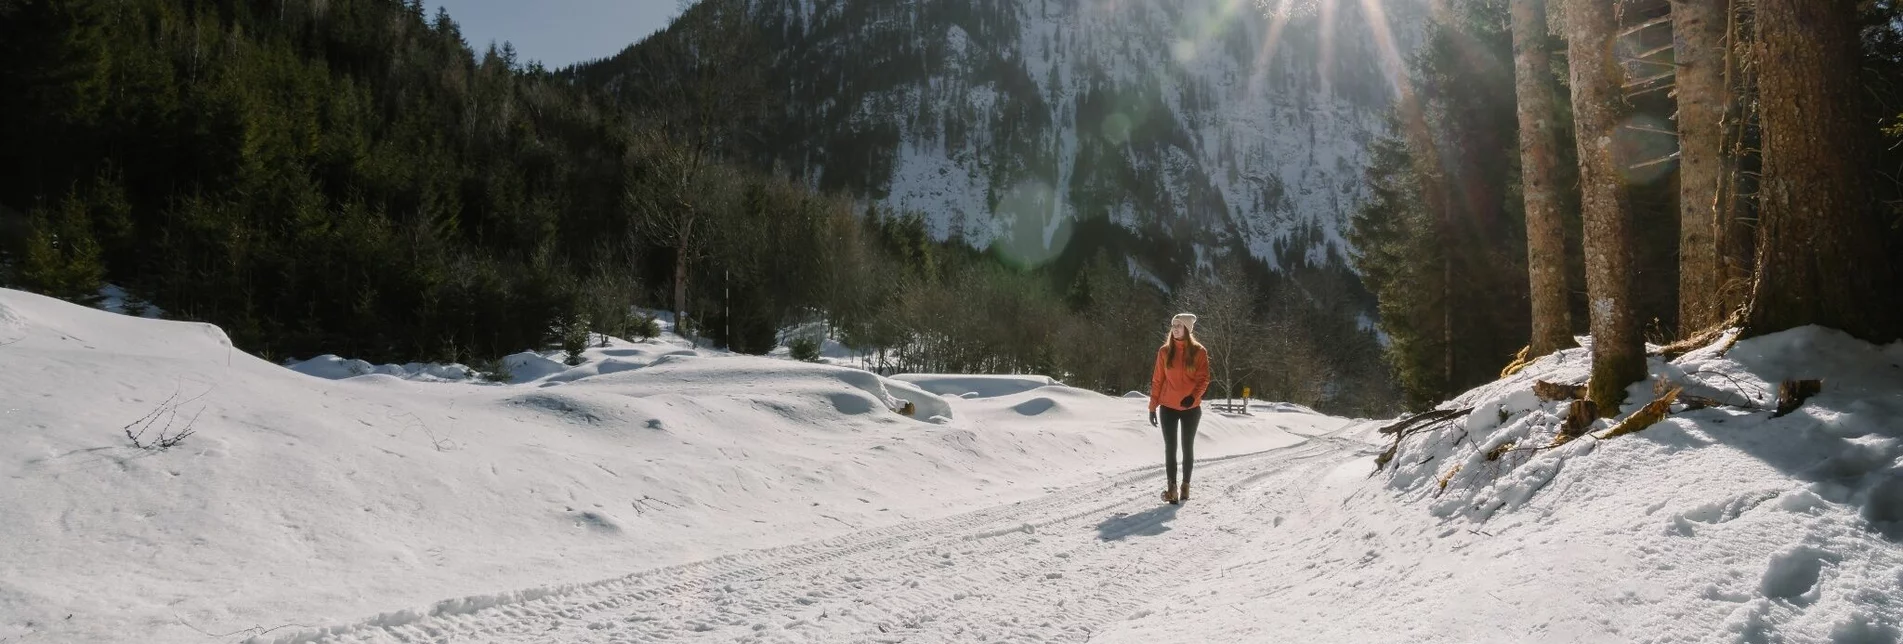 Winterwandern Winterwandern am Ofenstegweg - Touren-Impression #1 | © Erlebnisregion Schladming-Dachstein